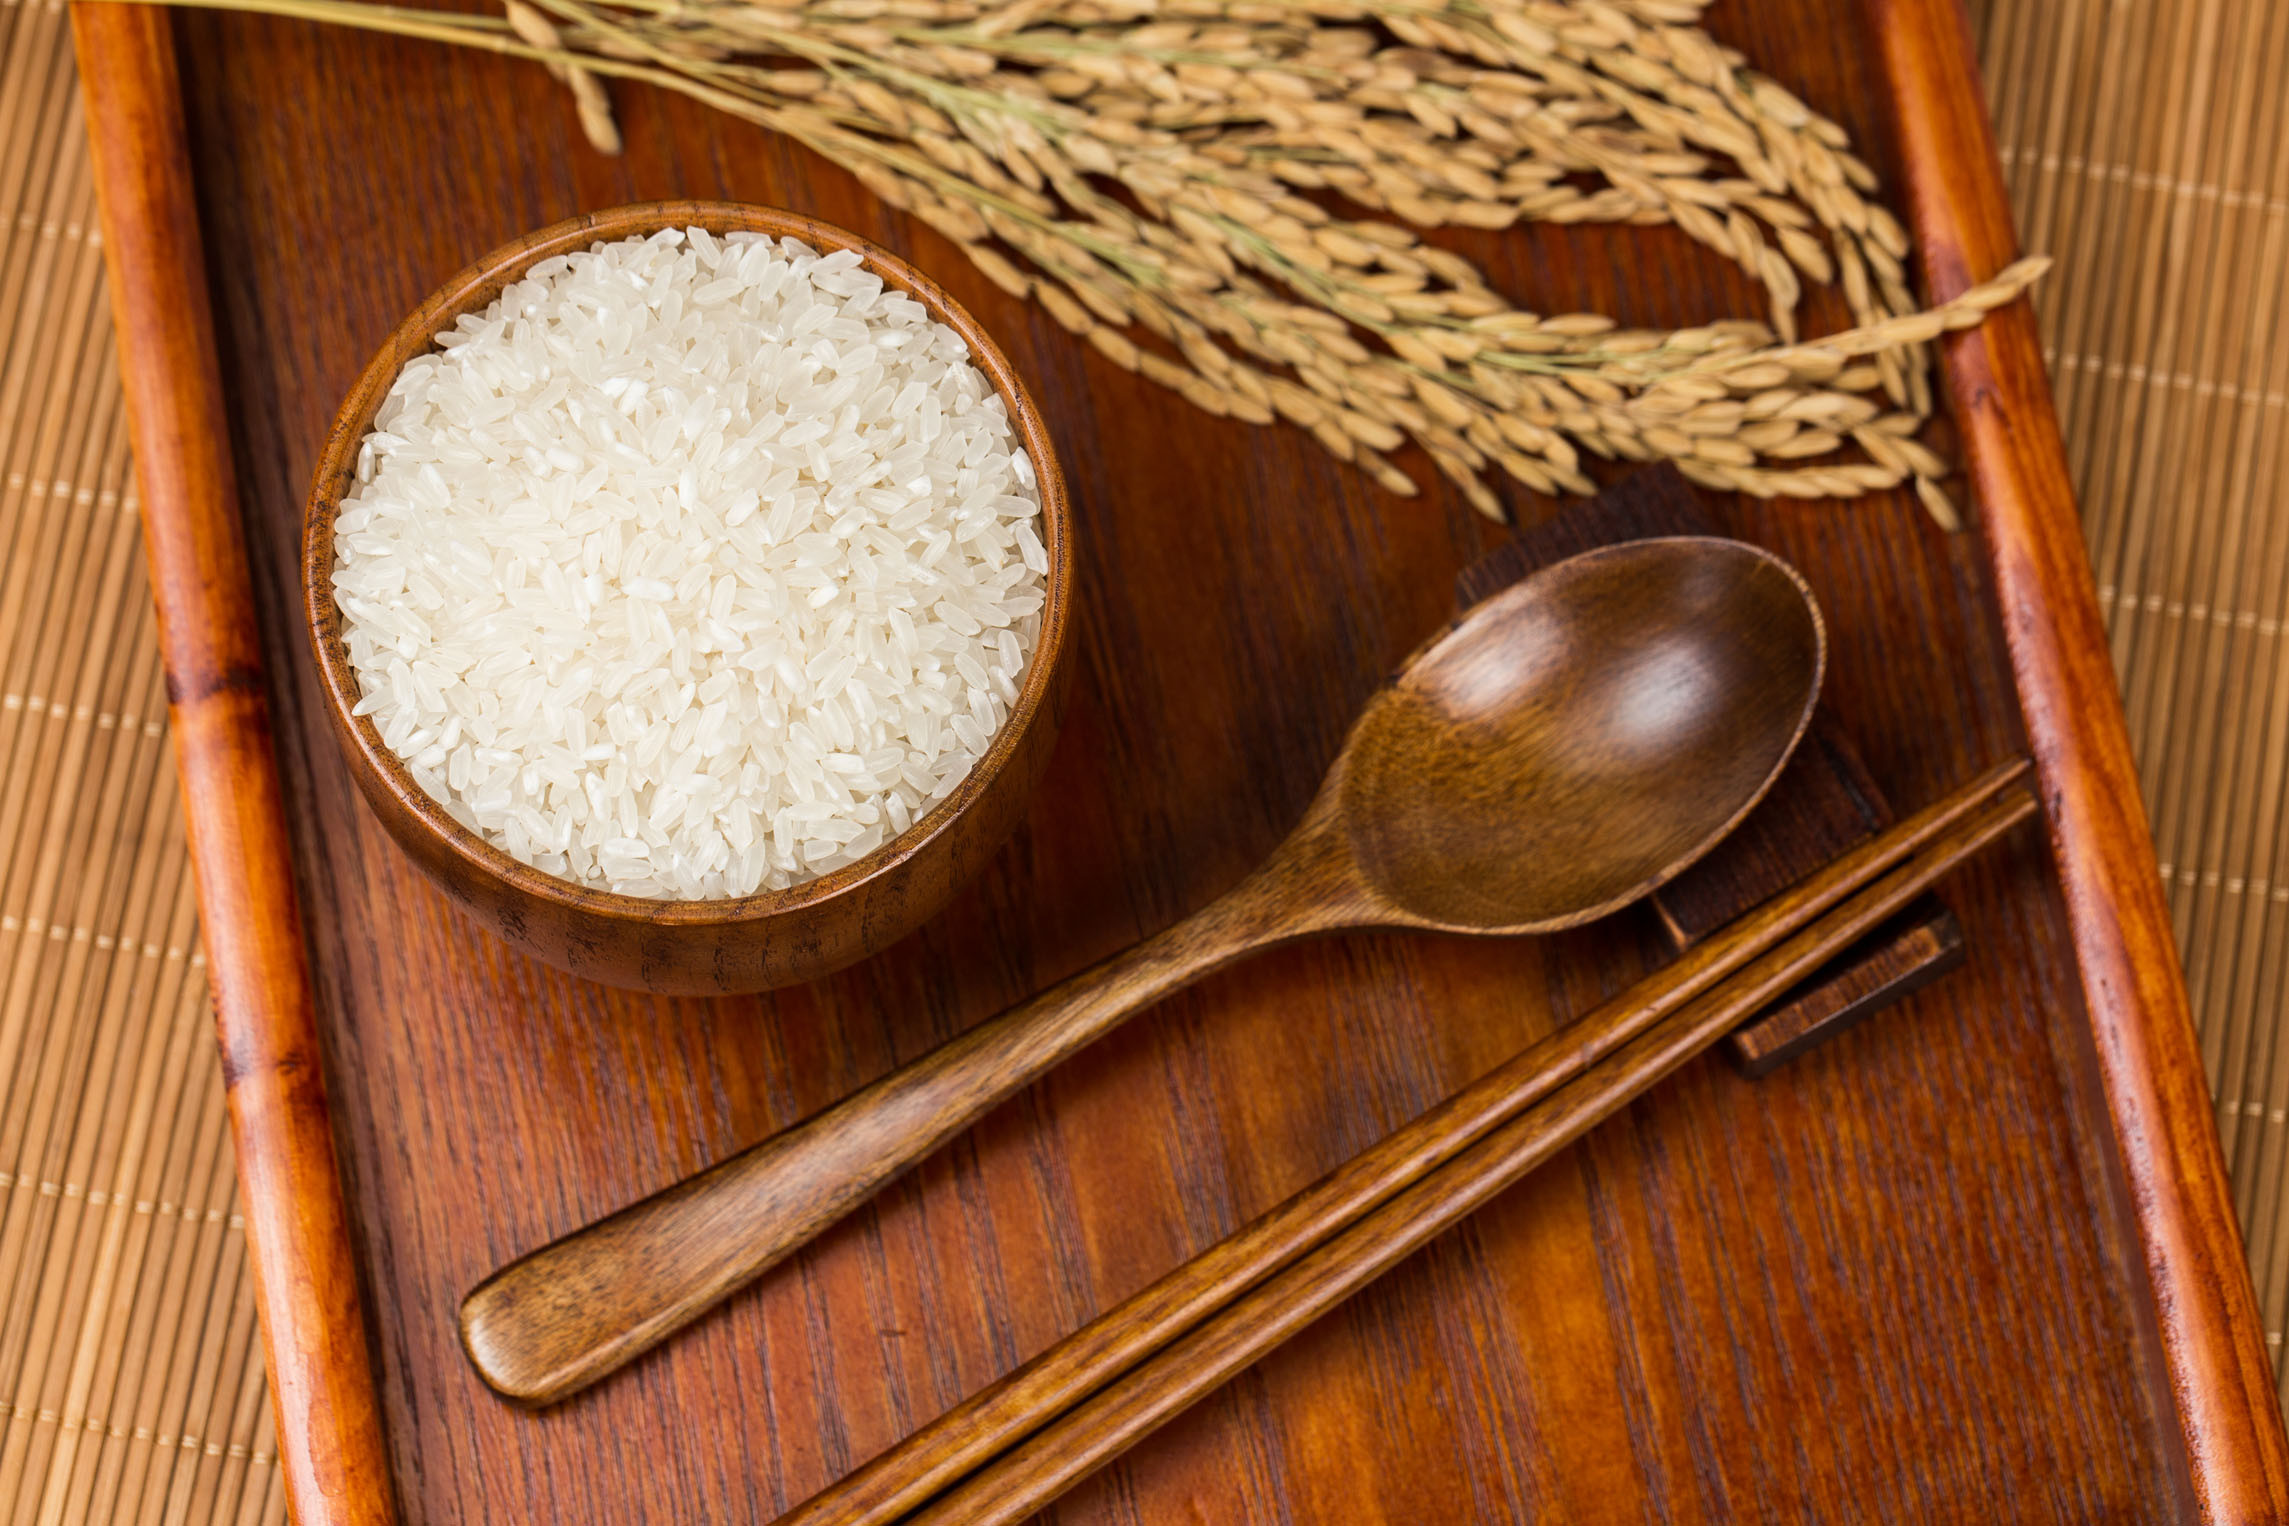 Long grain rice with 5% broken